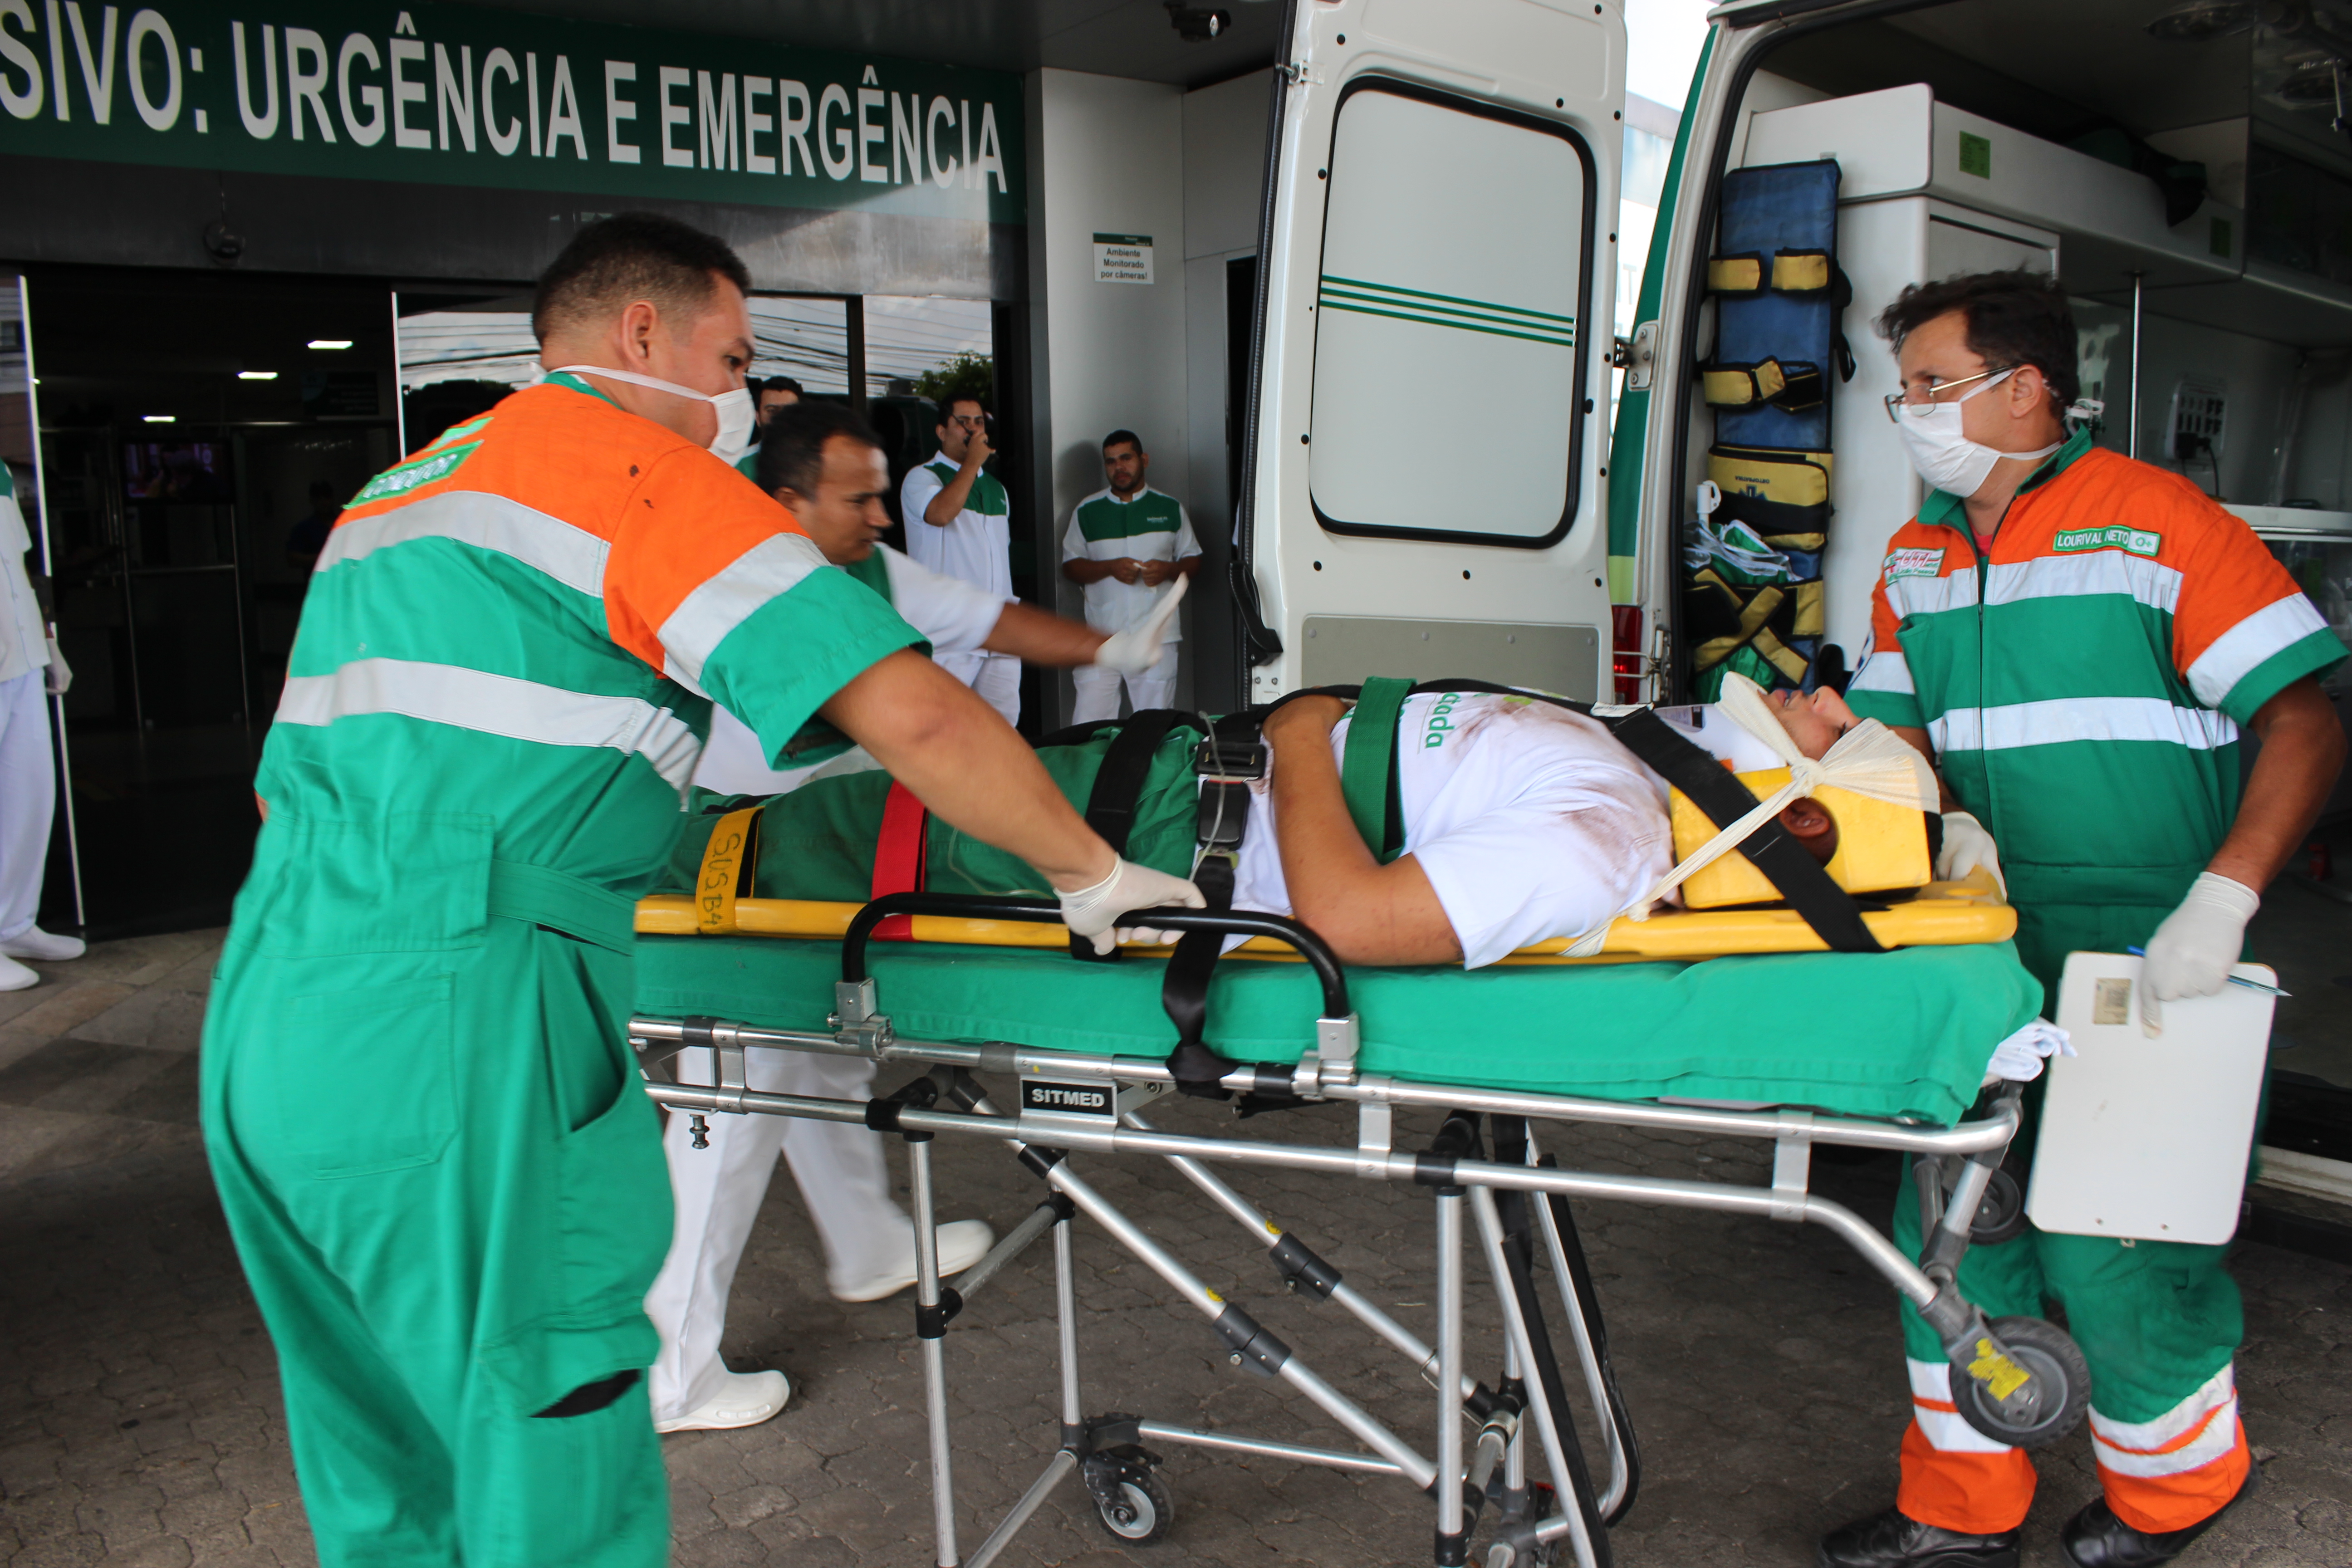 AÇÃO PREVENTIVA: Hospital Alberto Urquiza Wanderley se prepara para atendimento a vítimas de desastres